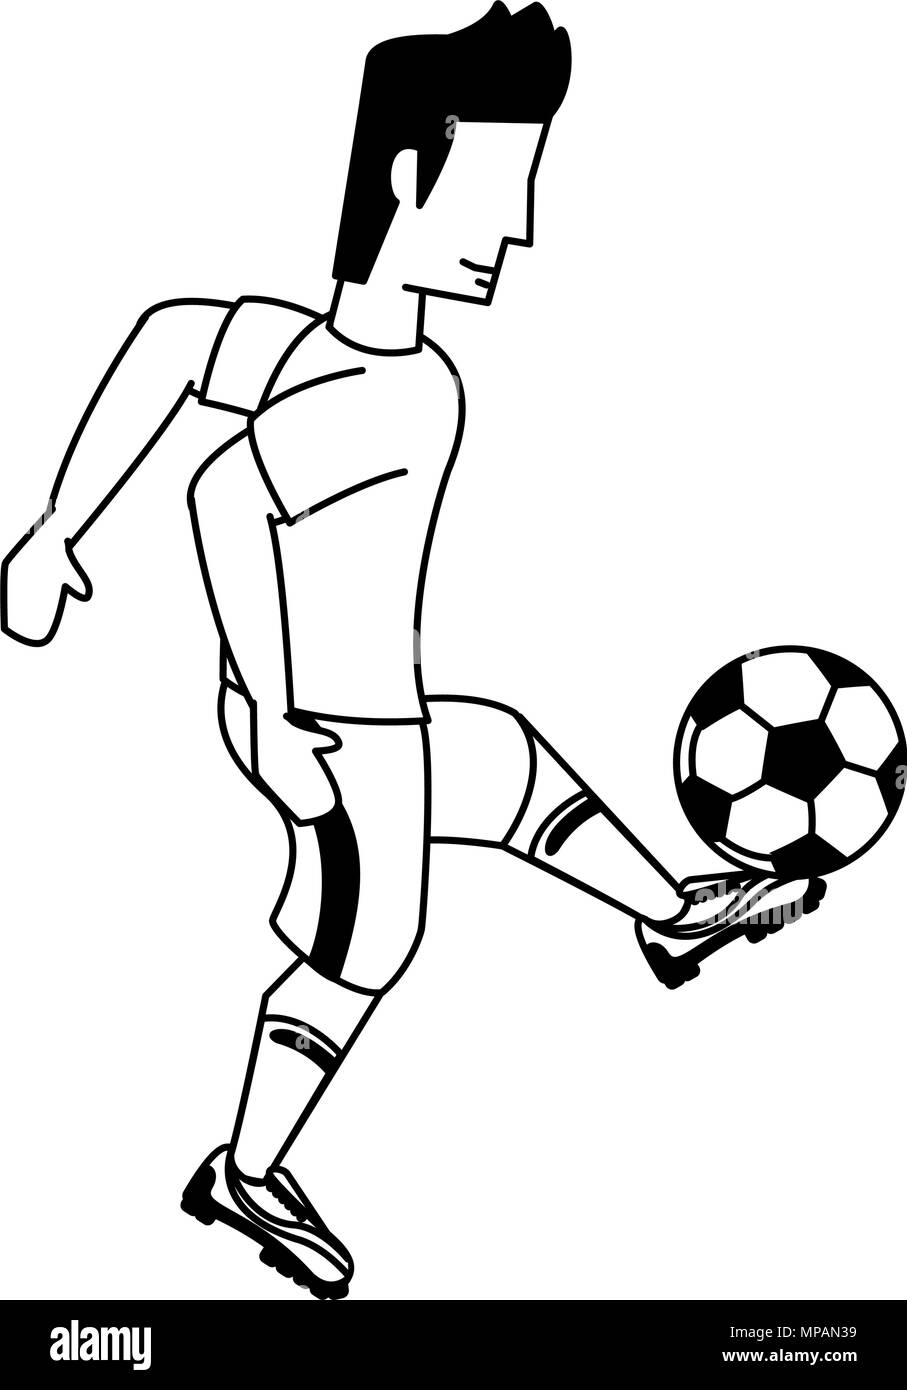 Fußball-Spieler Cartoon in den Farben Schwarz und Weiß Stock-Vektorgrafik -  Alamy